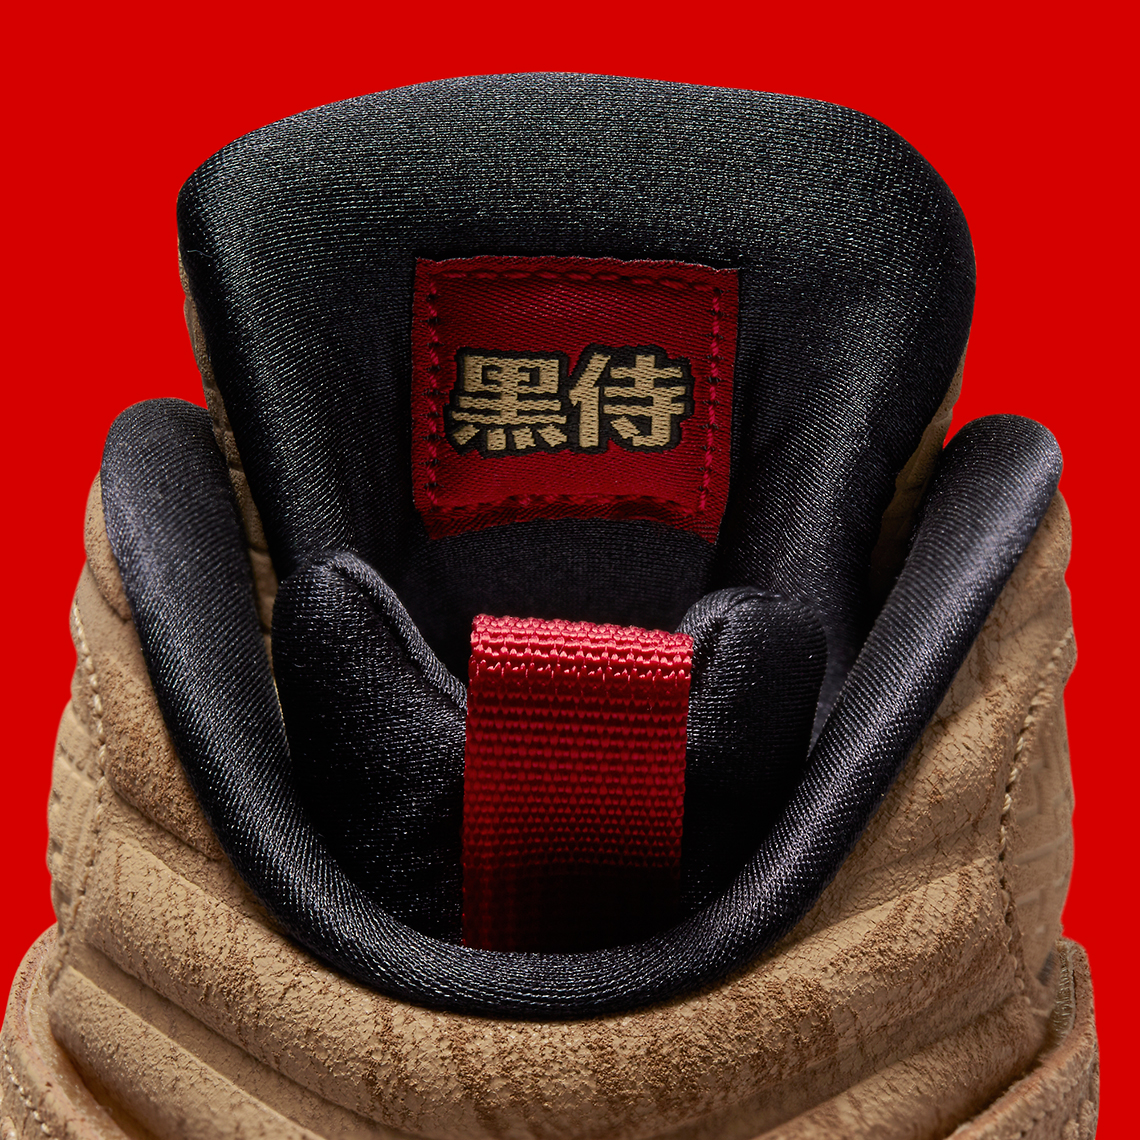 Air Jordan 3 style Rui Hachimura Do2496 700 Release Date 10